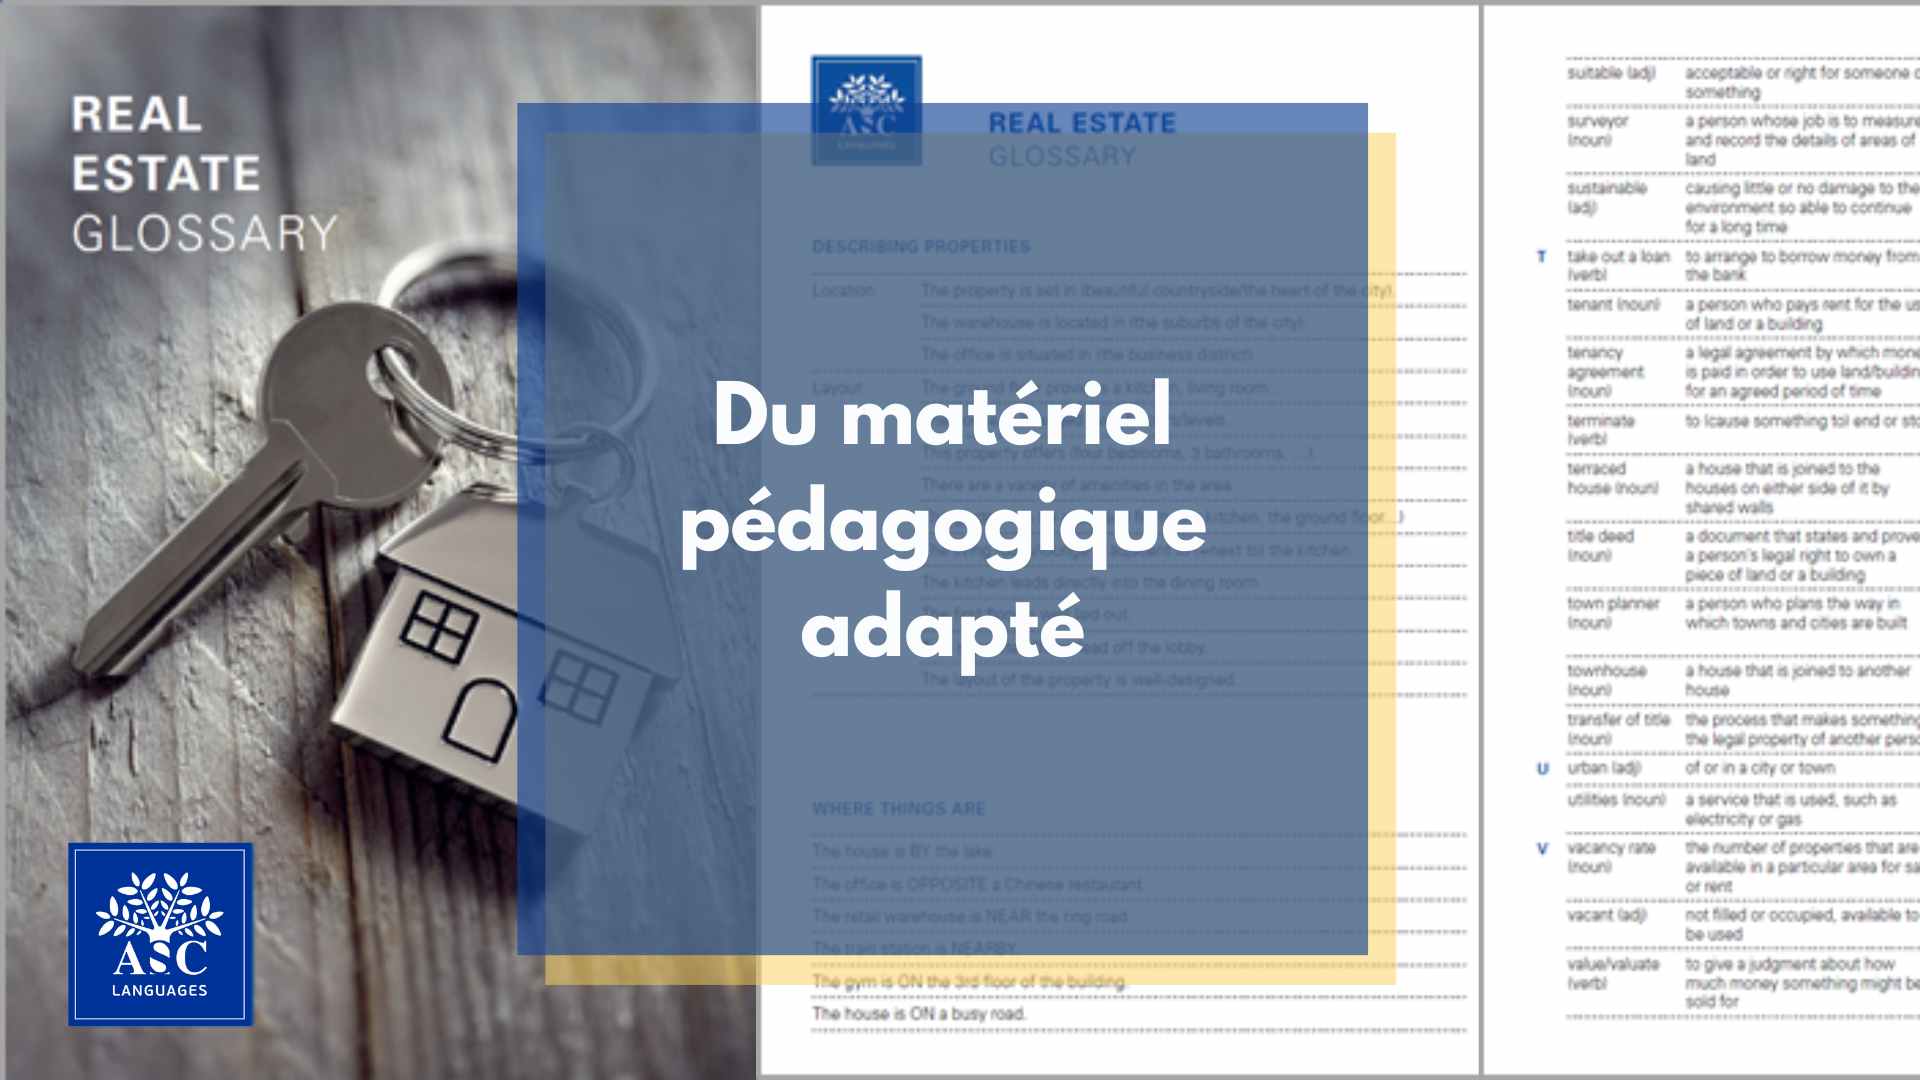 Materiel pedagogique ASC Languages adapté